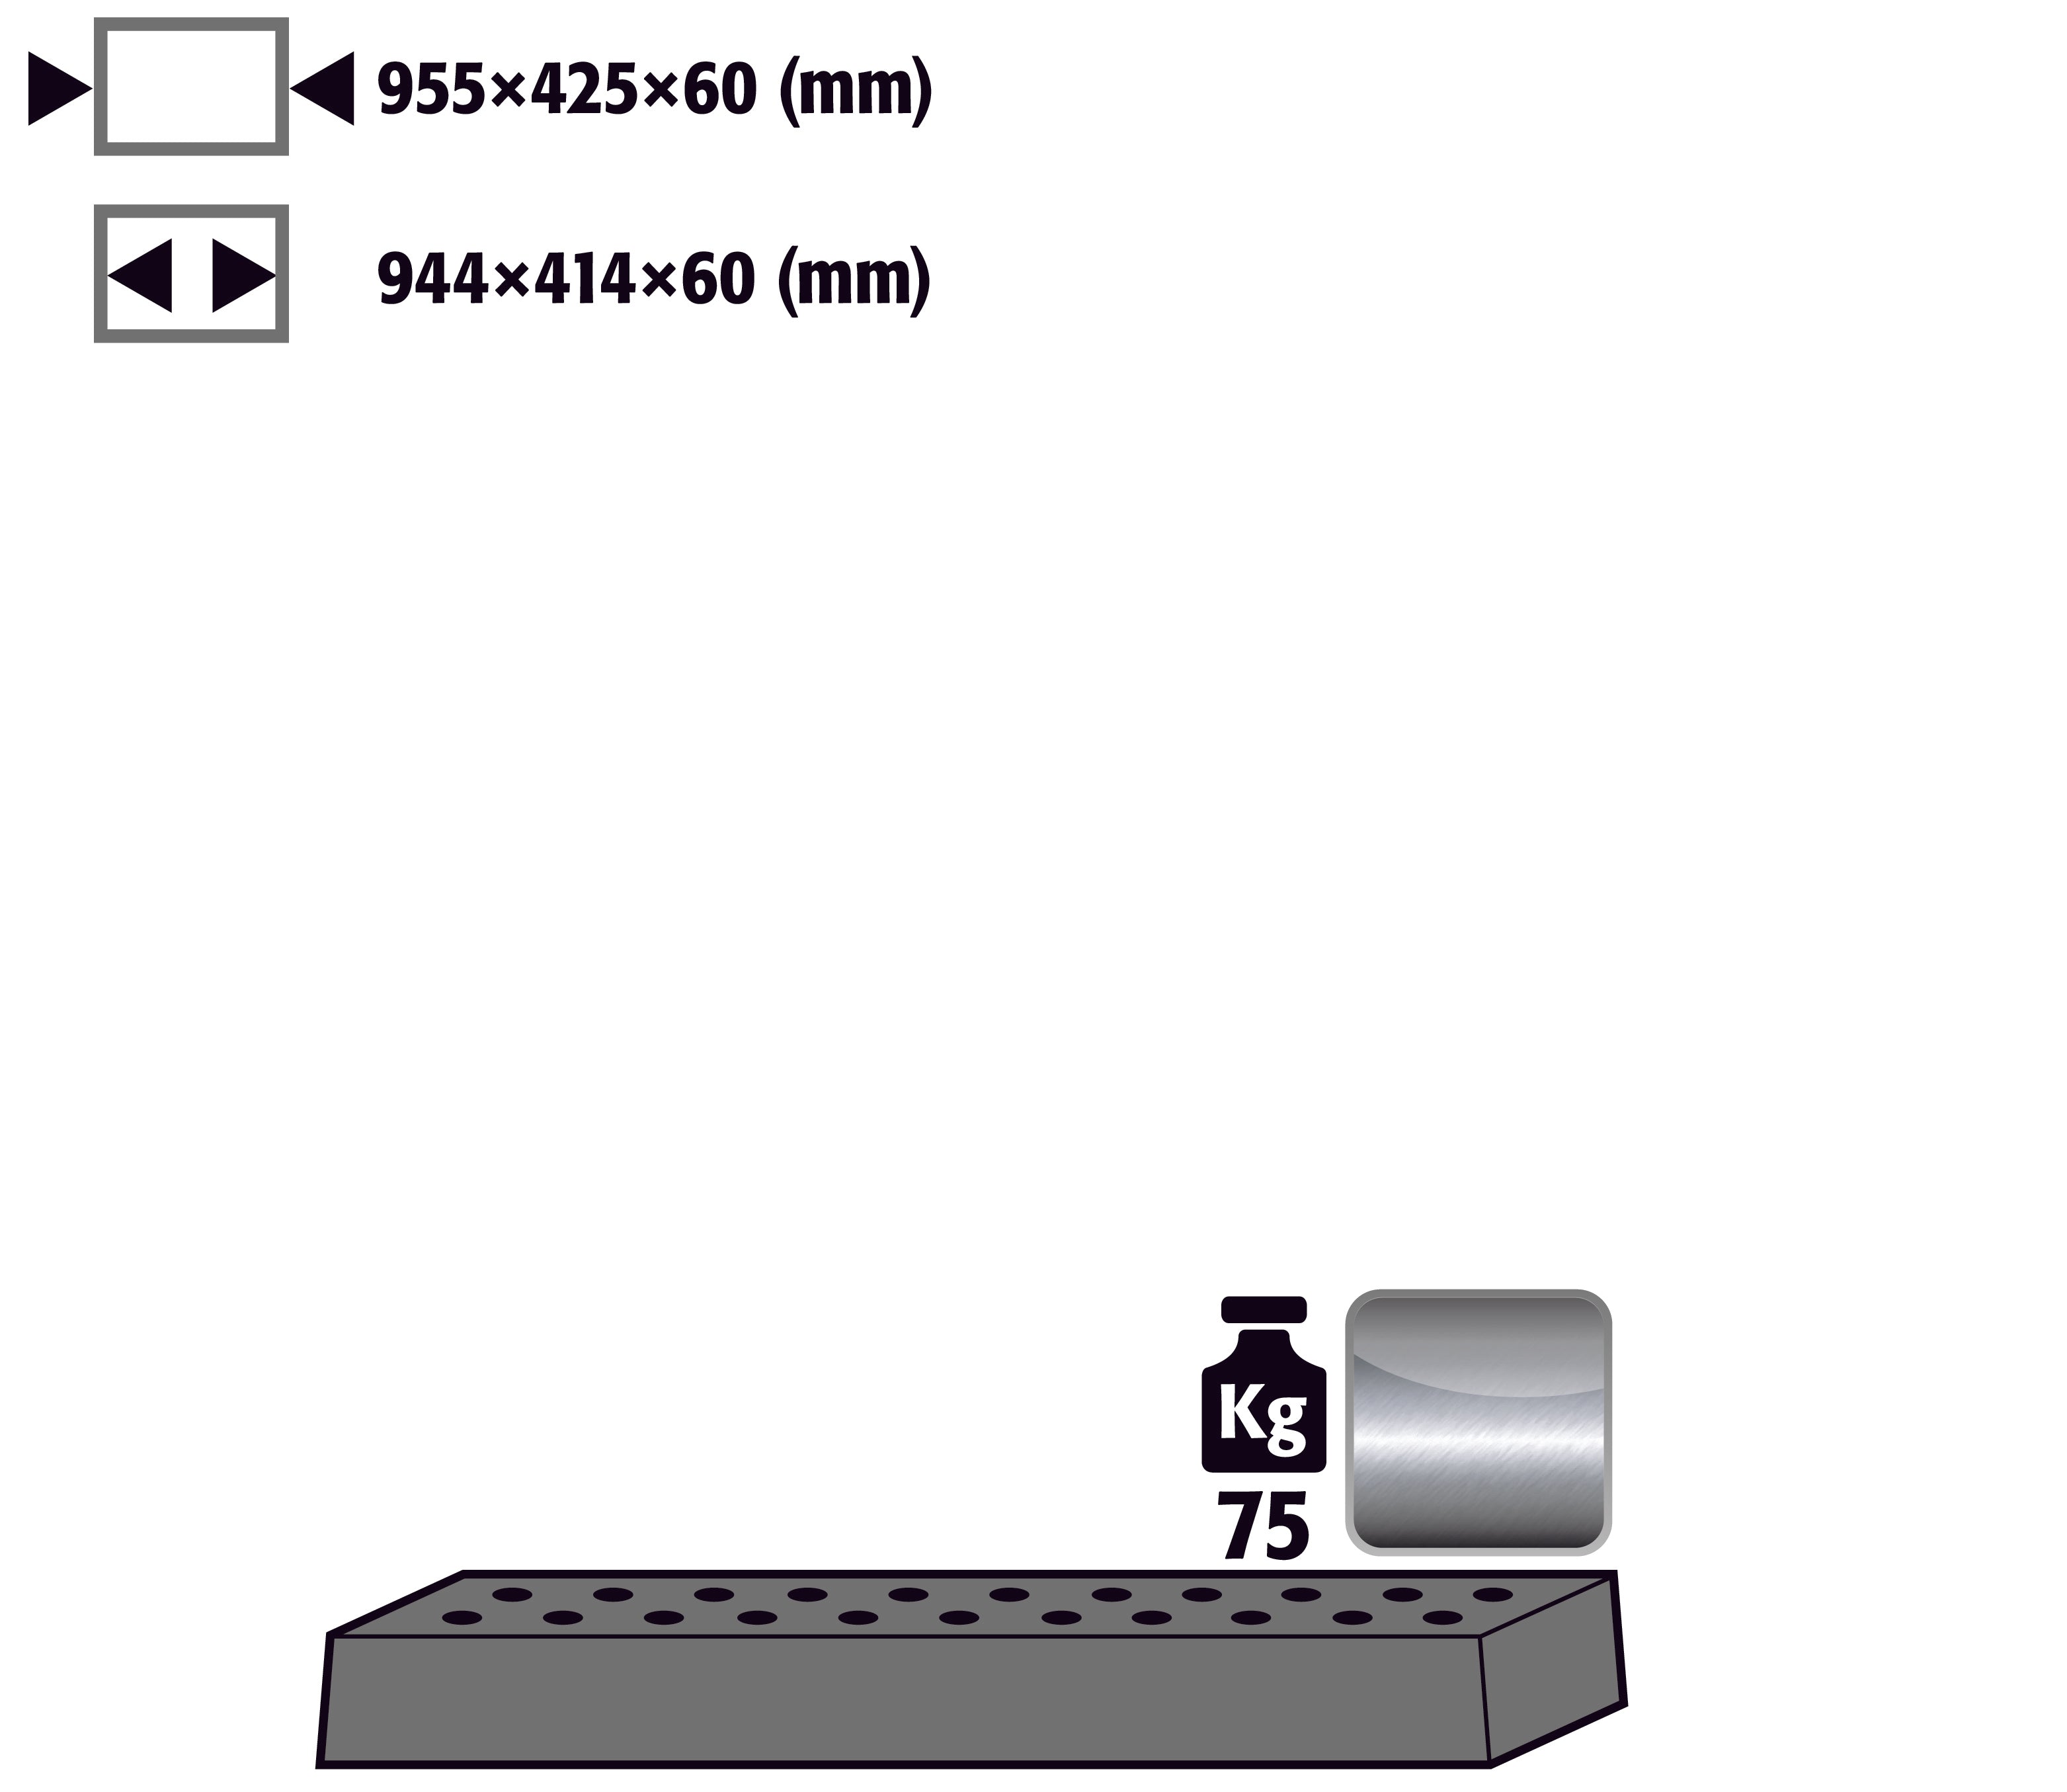 Tôle perforée standard pour modèle(s): UB90, UB30 avec largeur 1100 mm, acier inoxydable 1.4301 brut